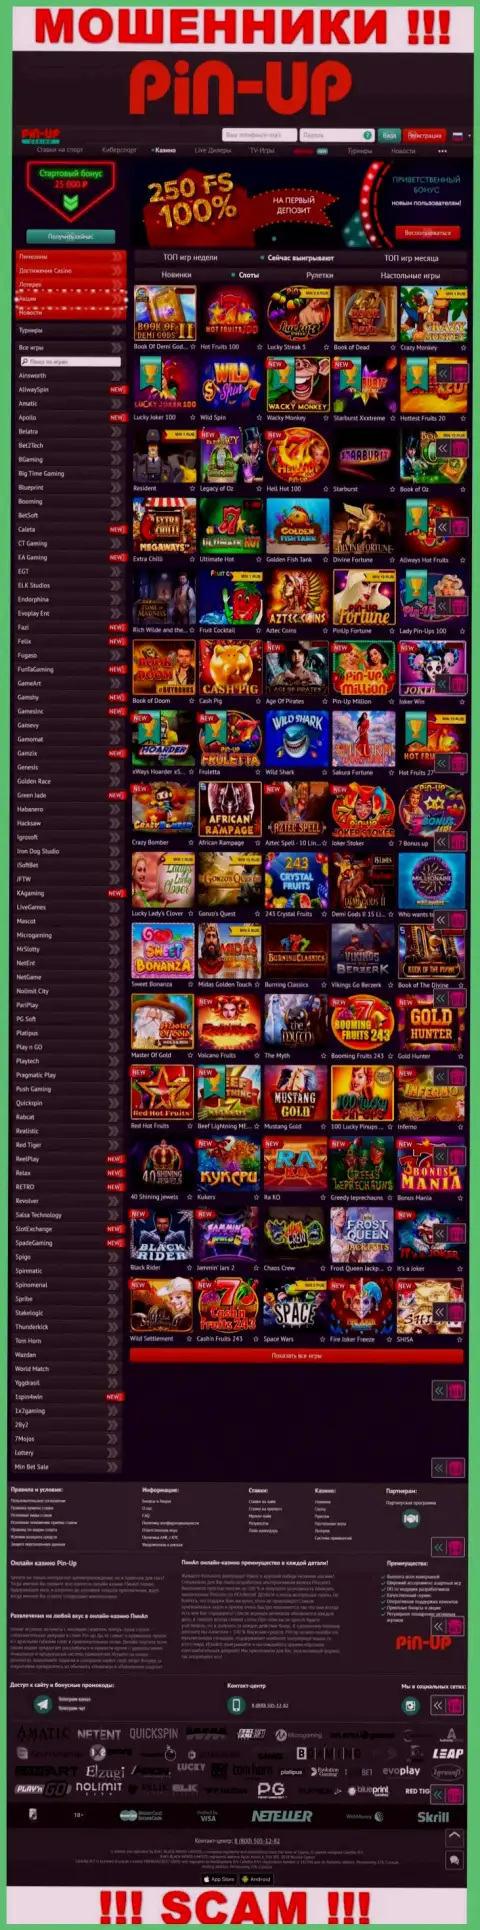 Pin-Up Casino - это официальный информационный сервис internet-кидал Pin Up Casino